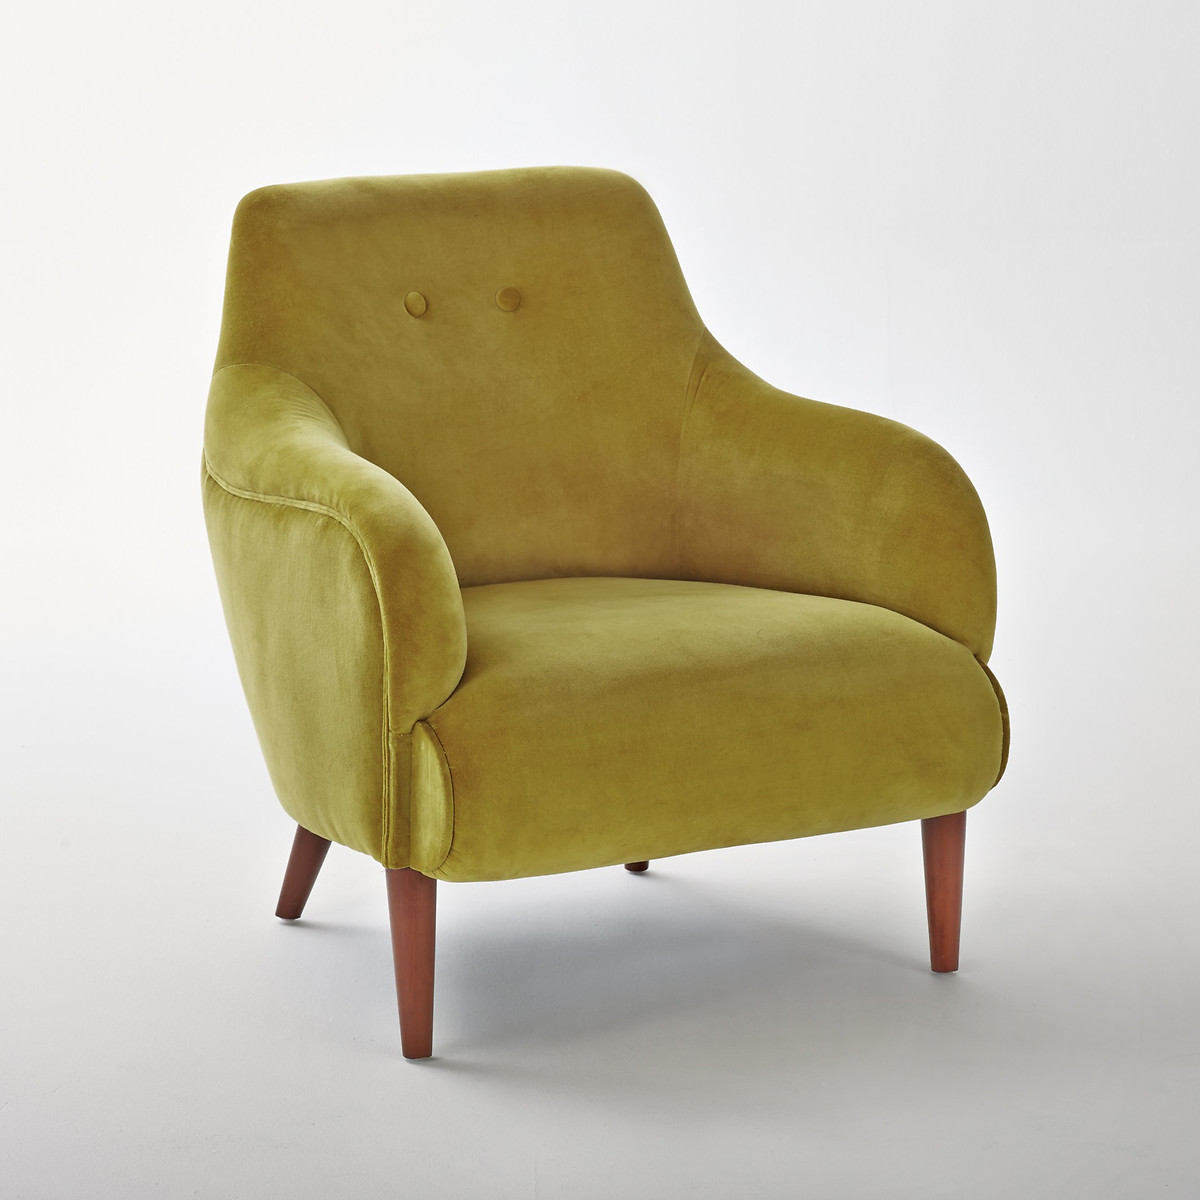 Кресло из велюра Lipstick единый размер желтый кресло для столовой из рифленого велюра canti единый размер каштановый